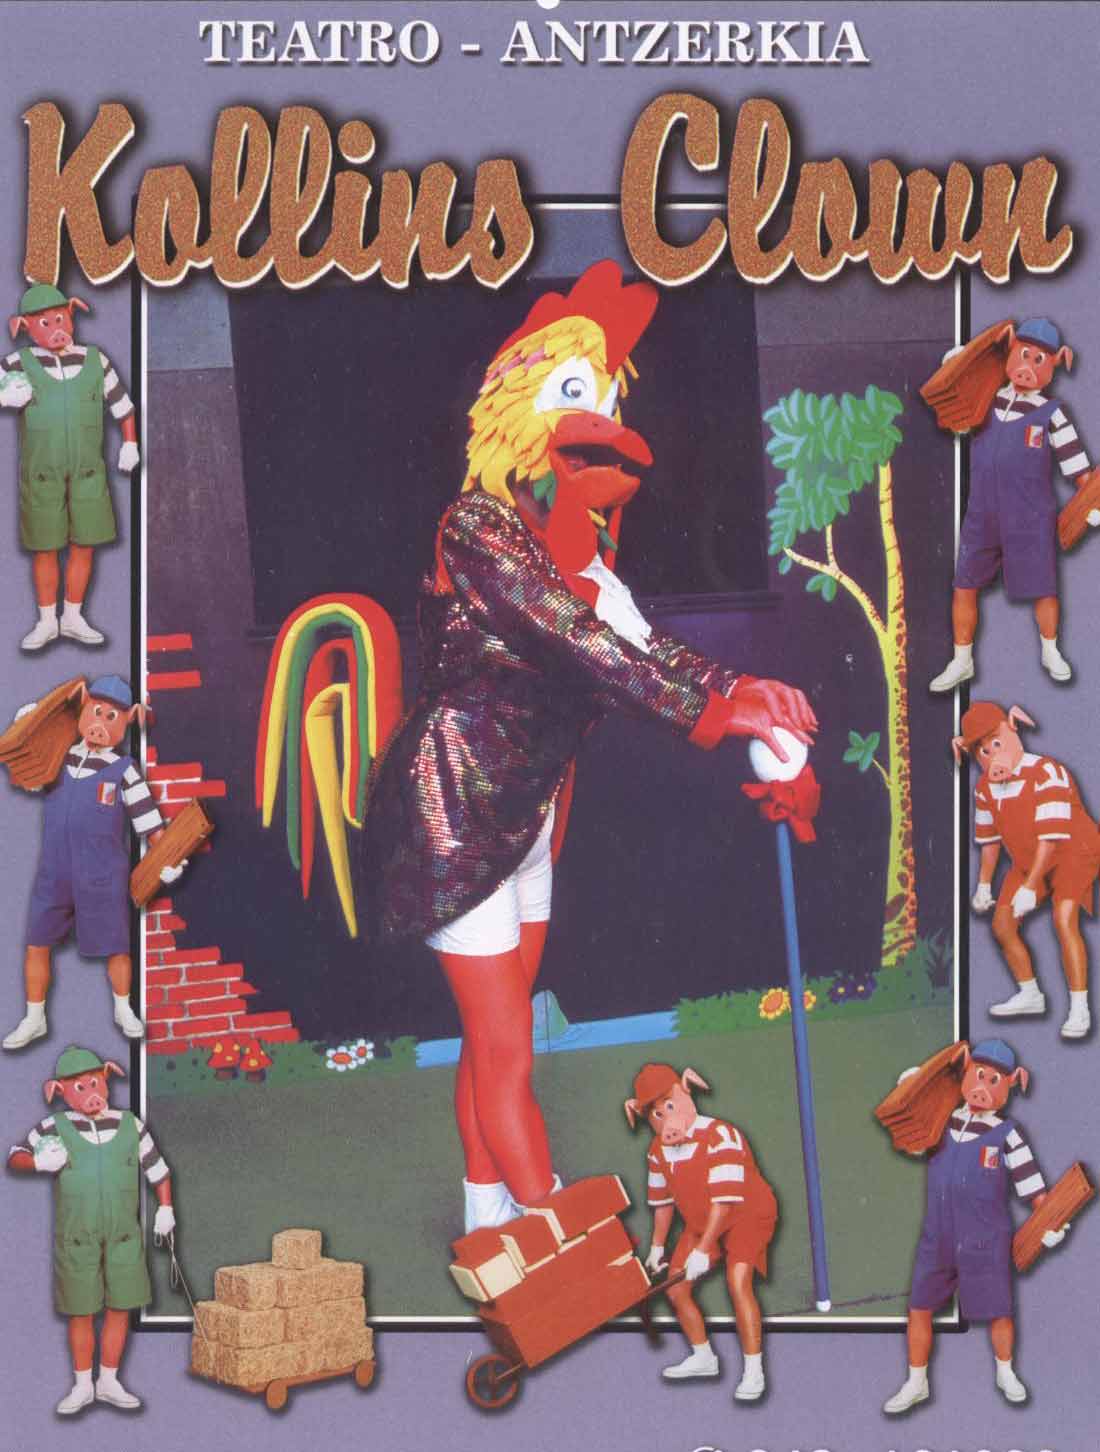 Kollins Clown cartel